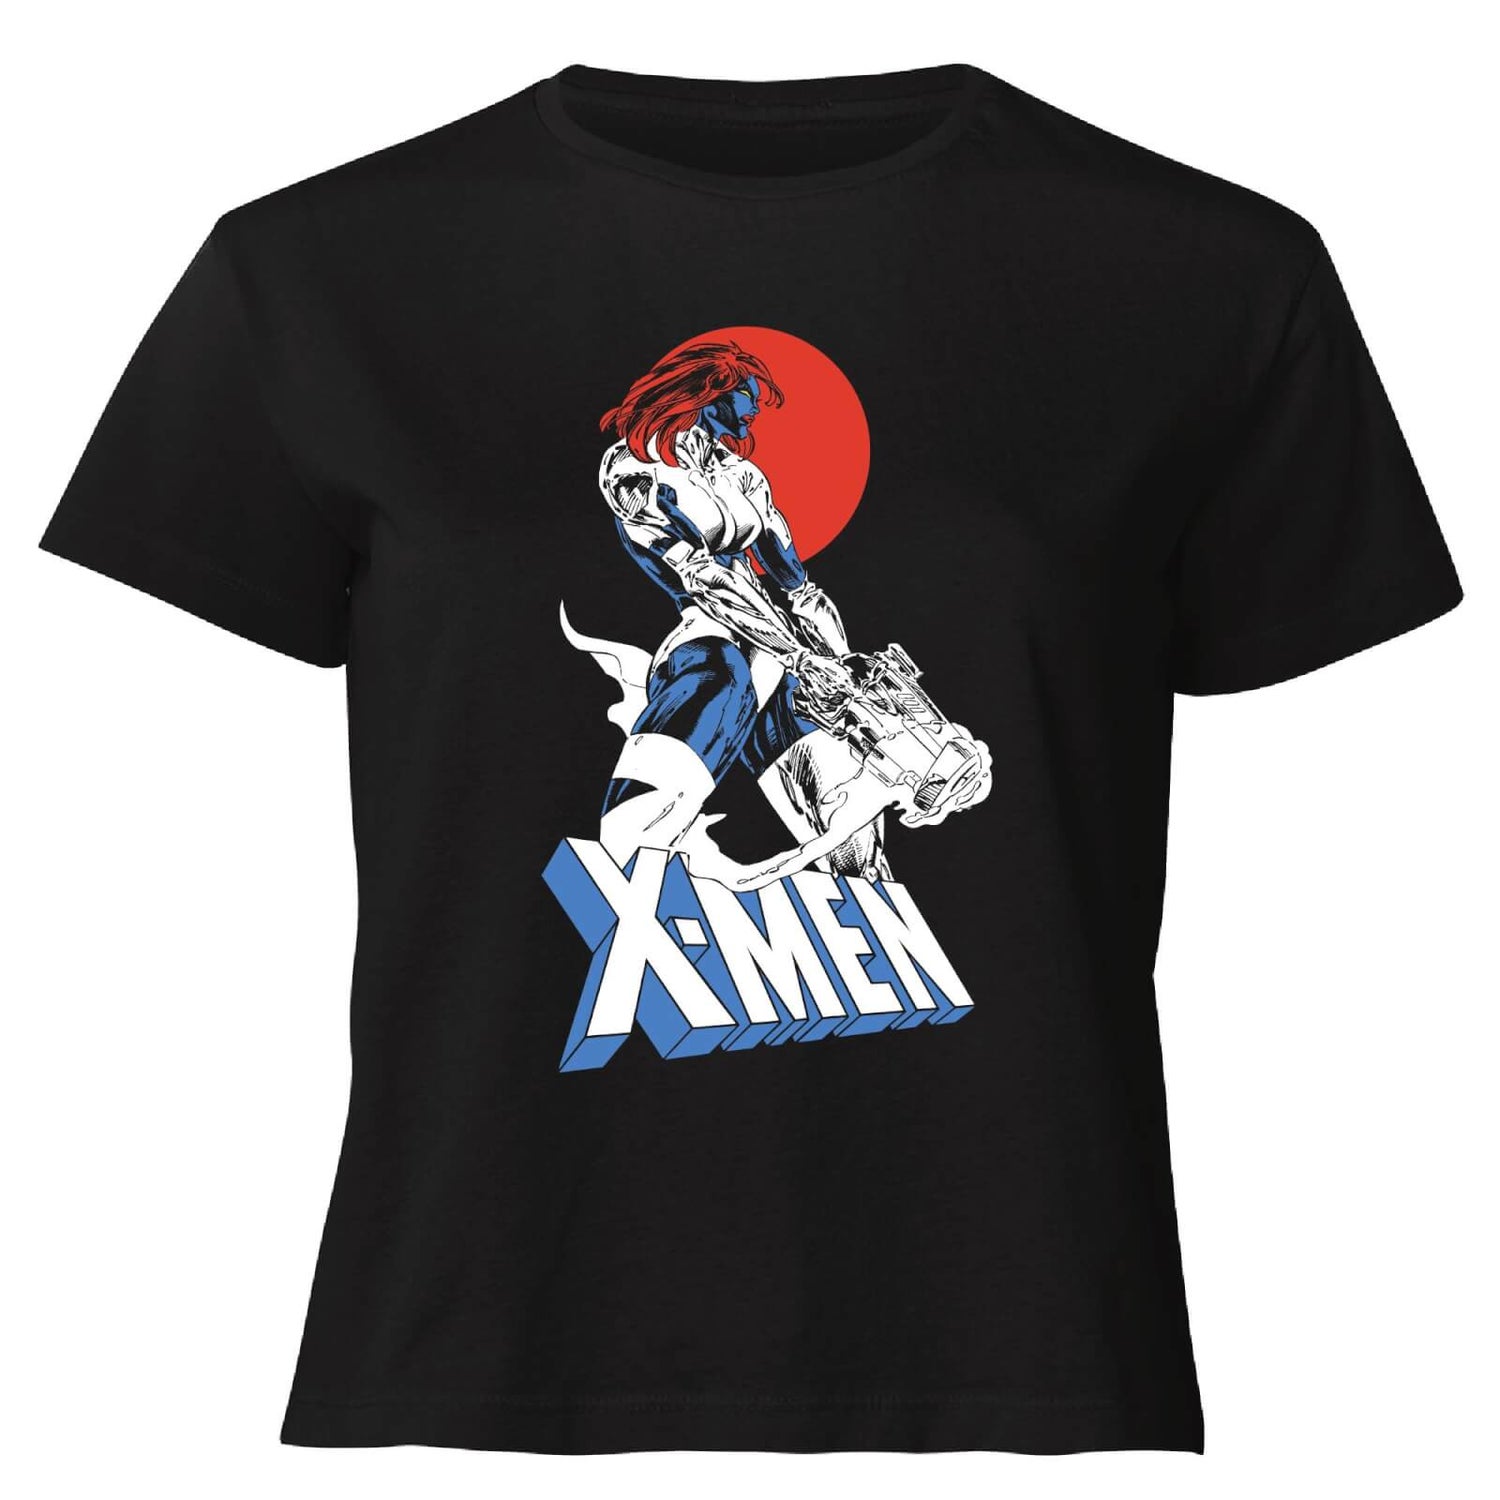 X-Men Mystique Women's Cropped T-Shirt - Black